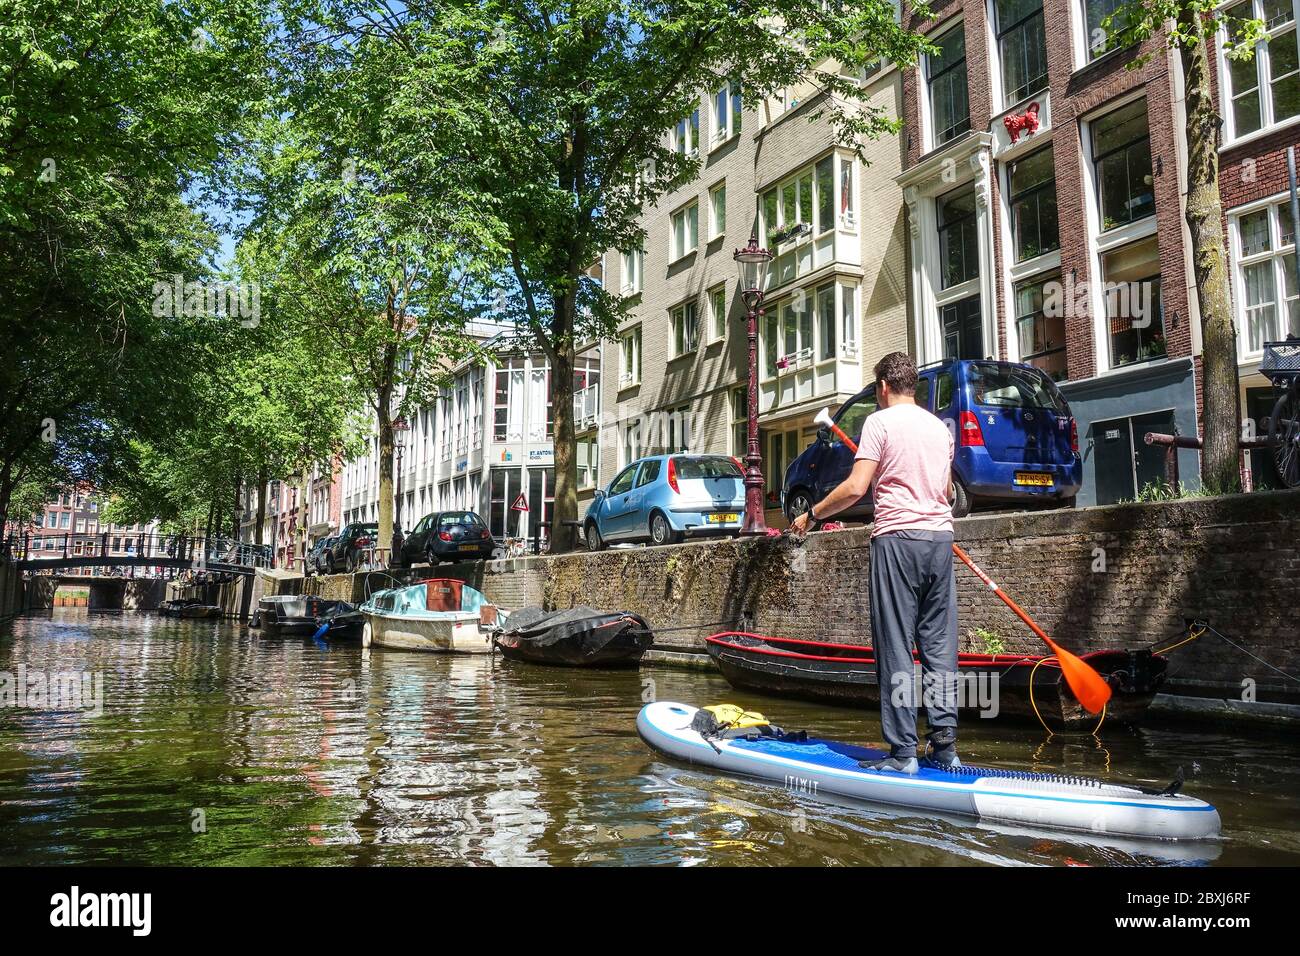 Homme sur un SUP (stand-up paddle board) sur les canaux dans le centre de la ville tranquille d'Amsterdam (pays-Bas) pendant la crise Covid-19 Banque D'Images